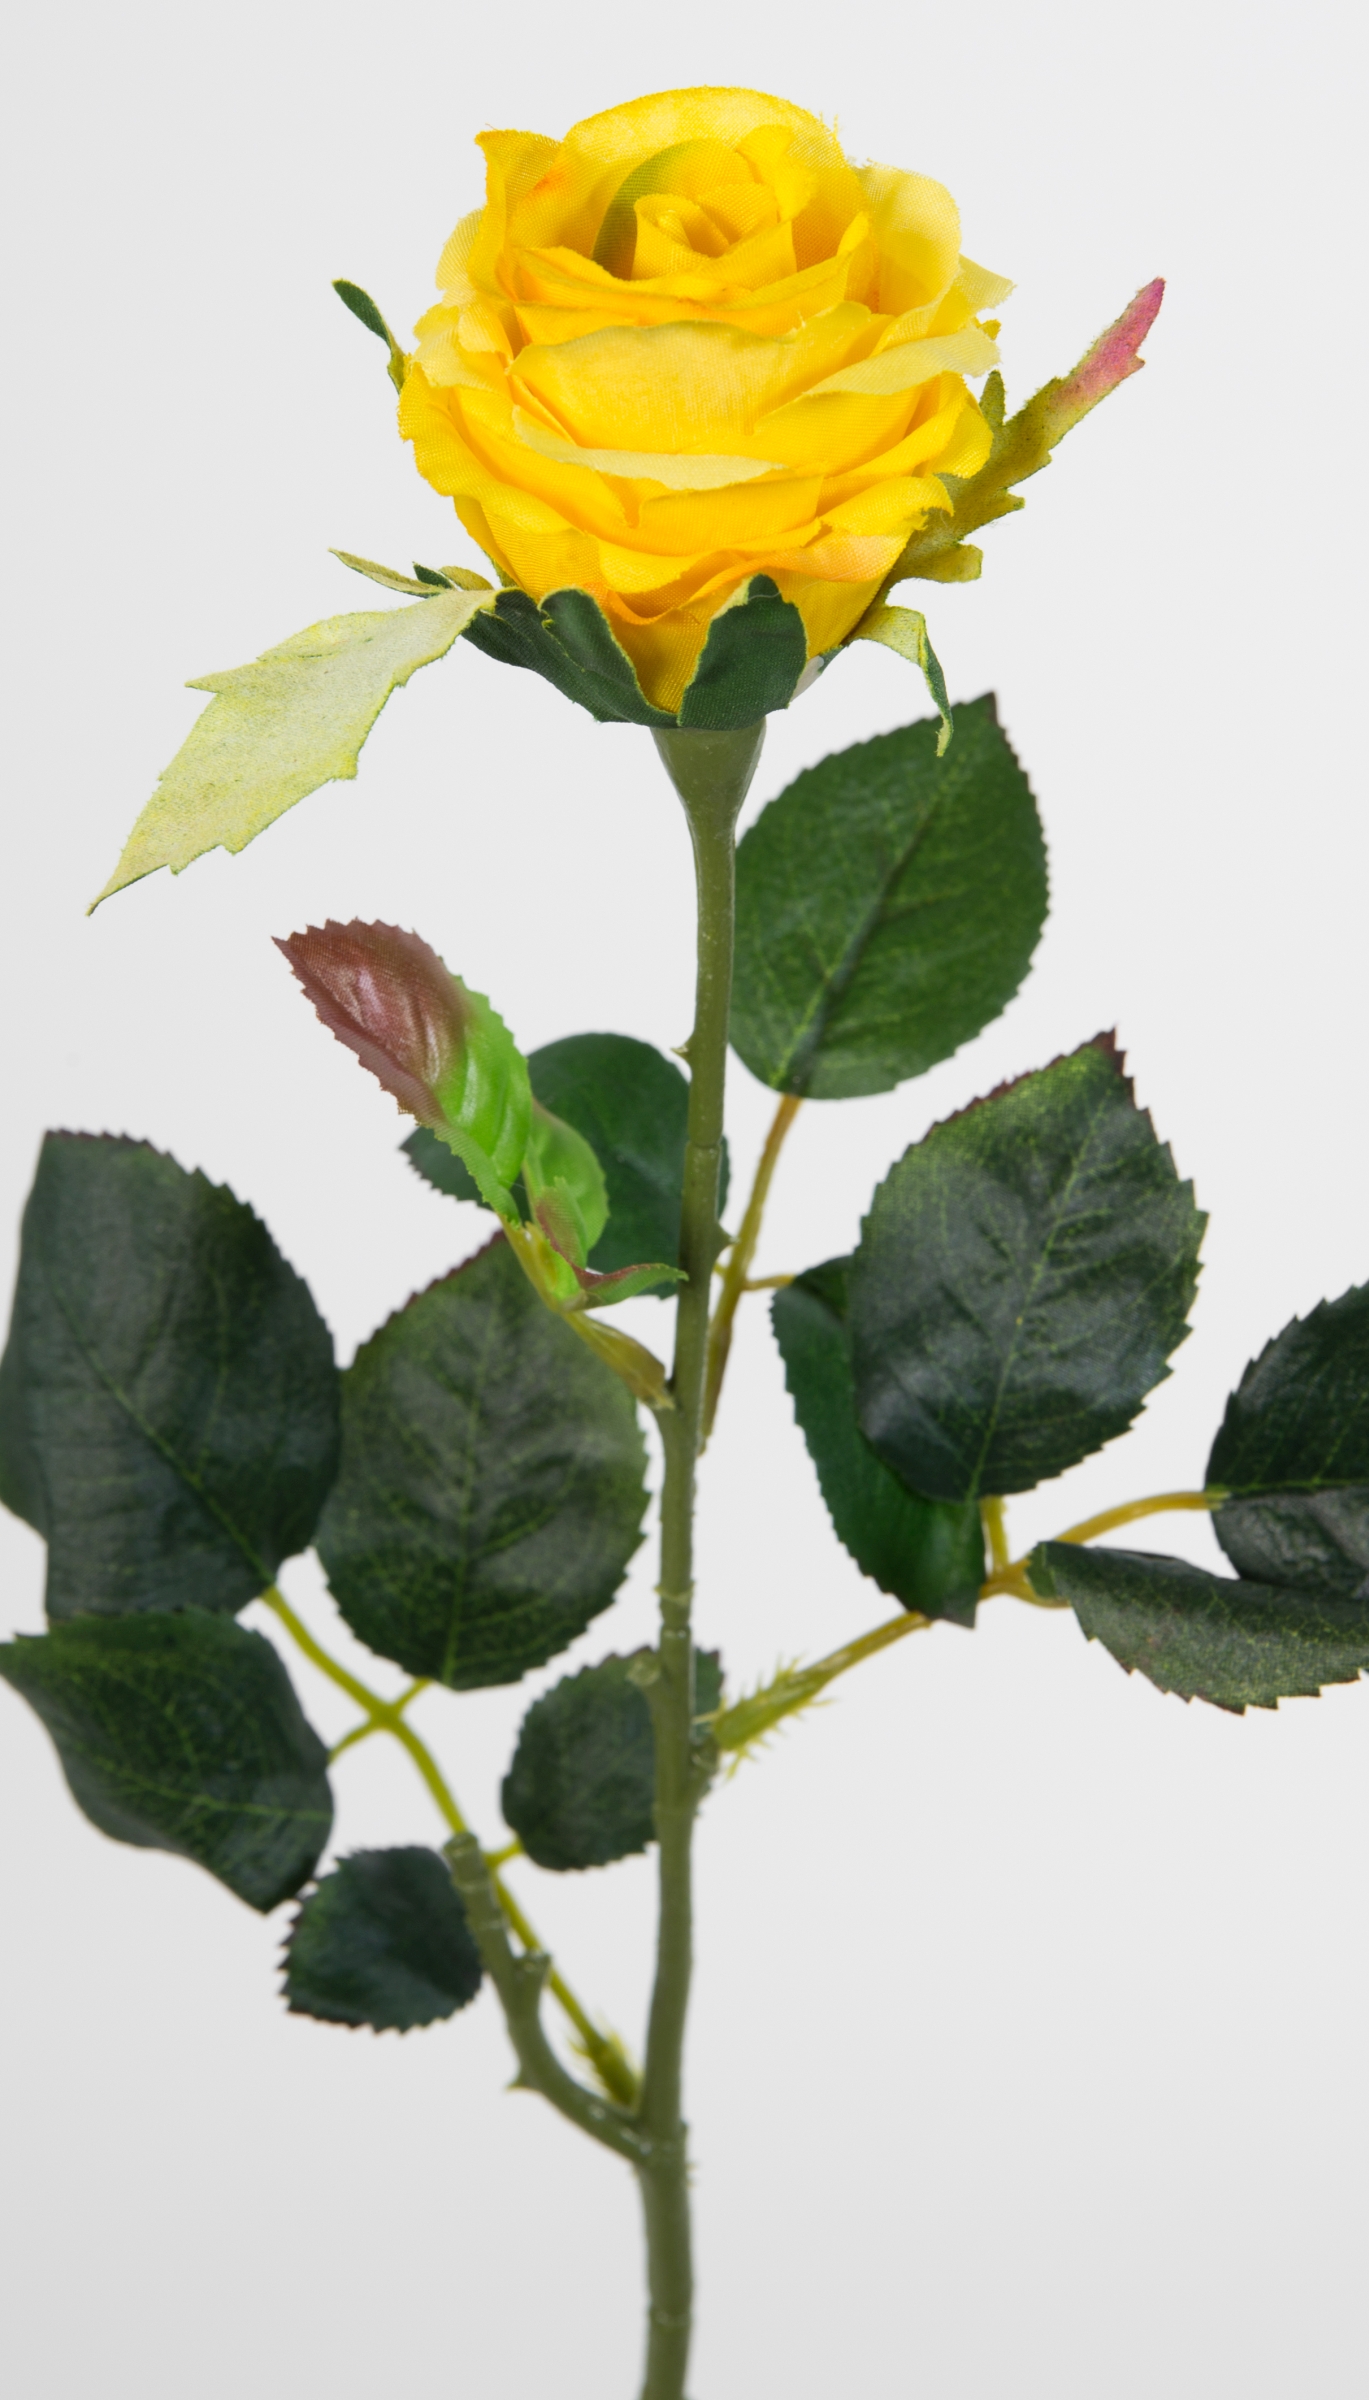 Rose Elena Kunstblumen Seidenblumen Rosen Blumen künstliche gelb 45cm PM